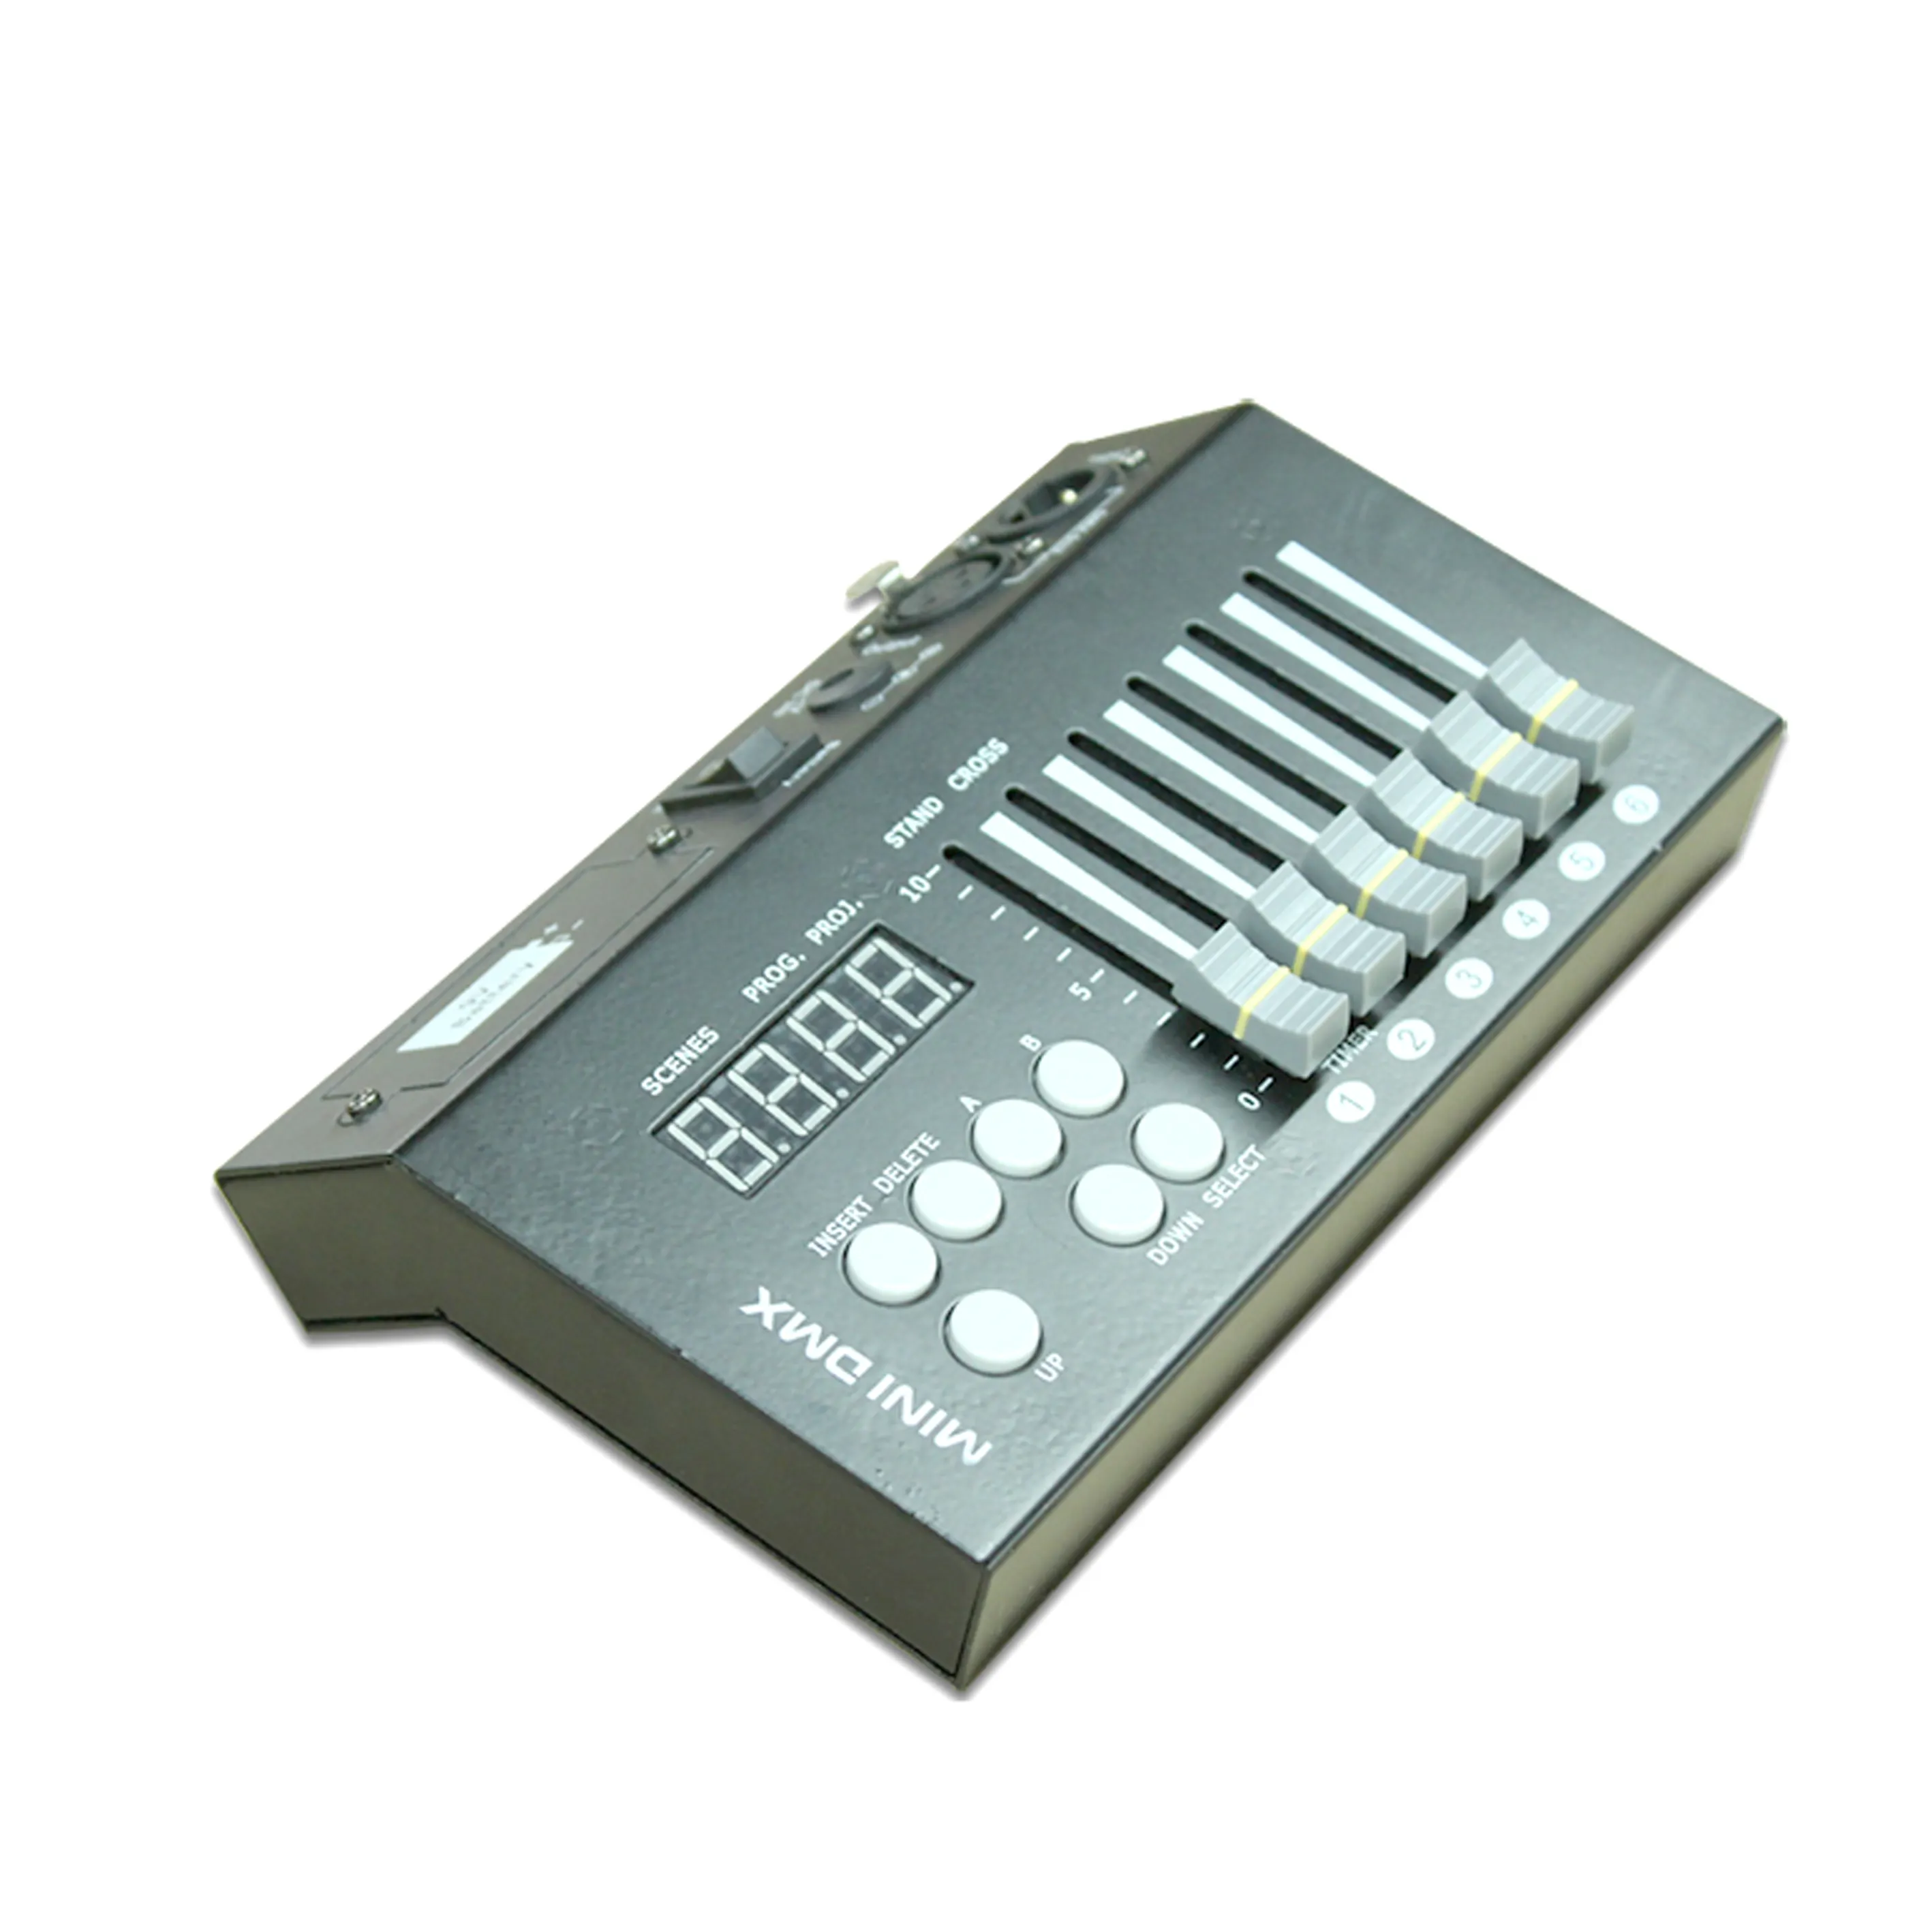 جهاز تحكم DMX بـ 54 قناة, جهاز تحكم DMX للإضاءة في أجهزة الضباب